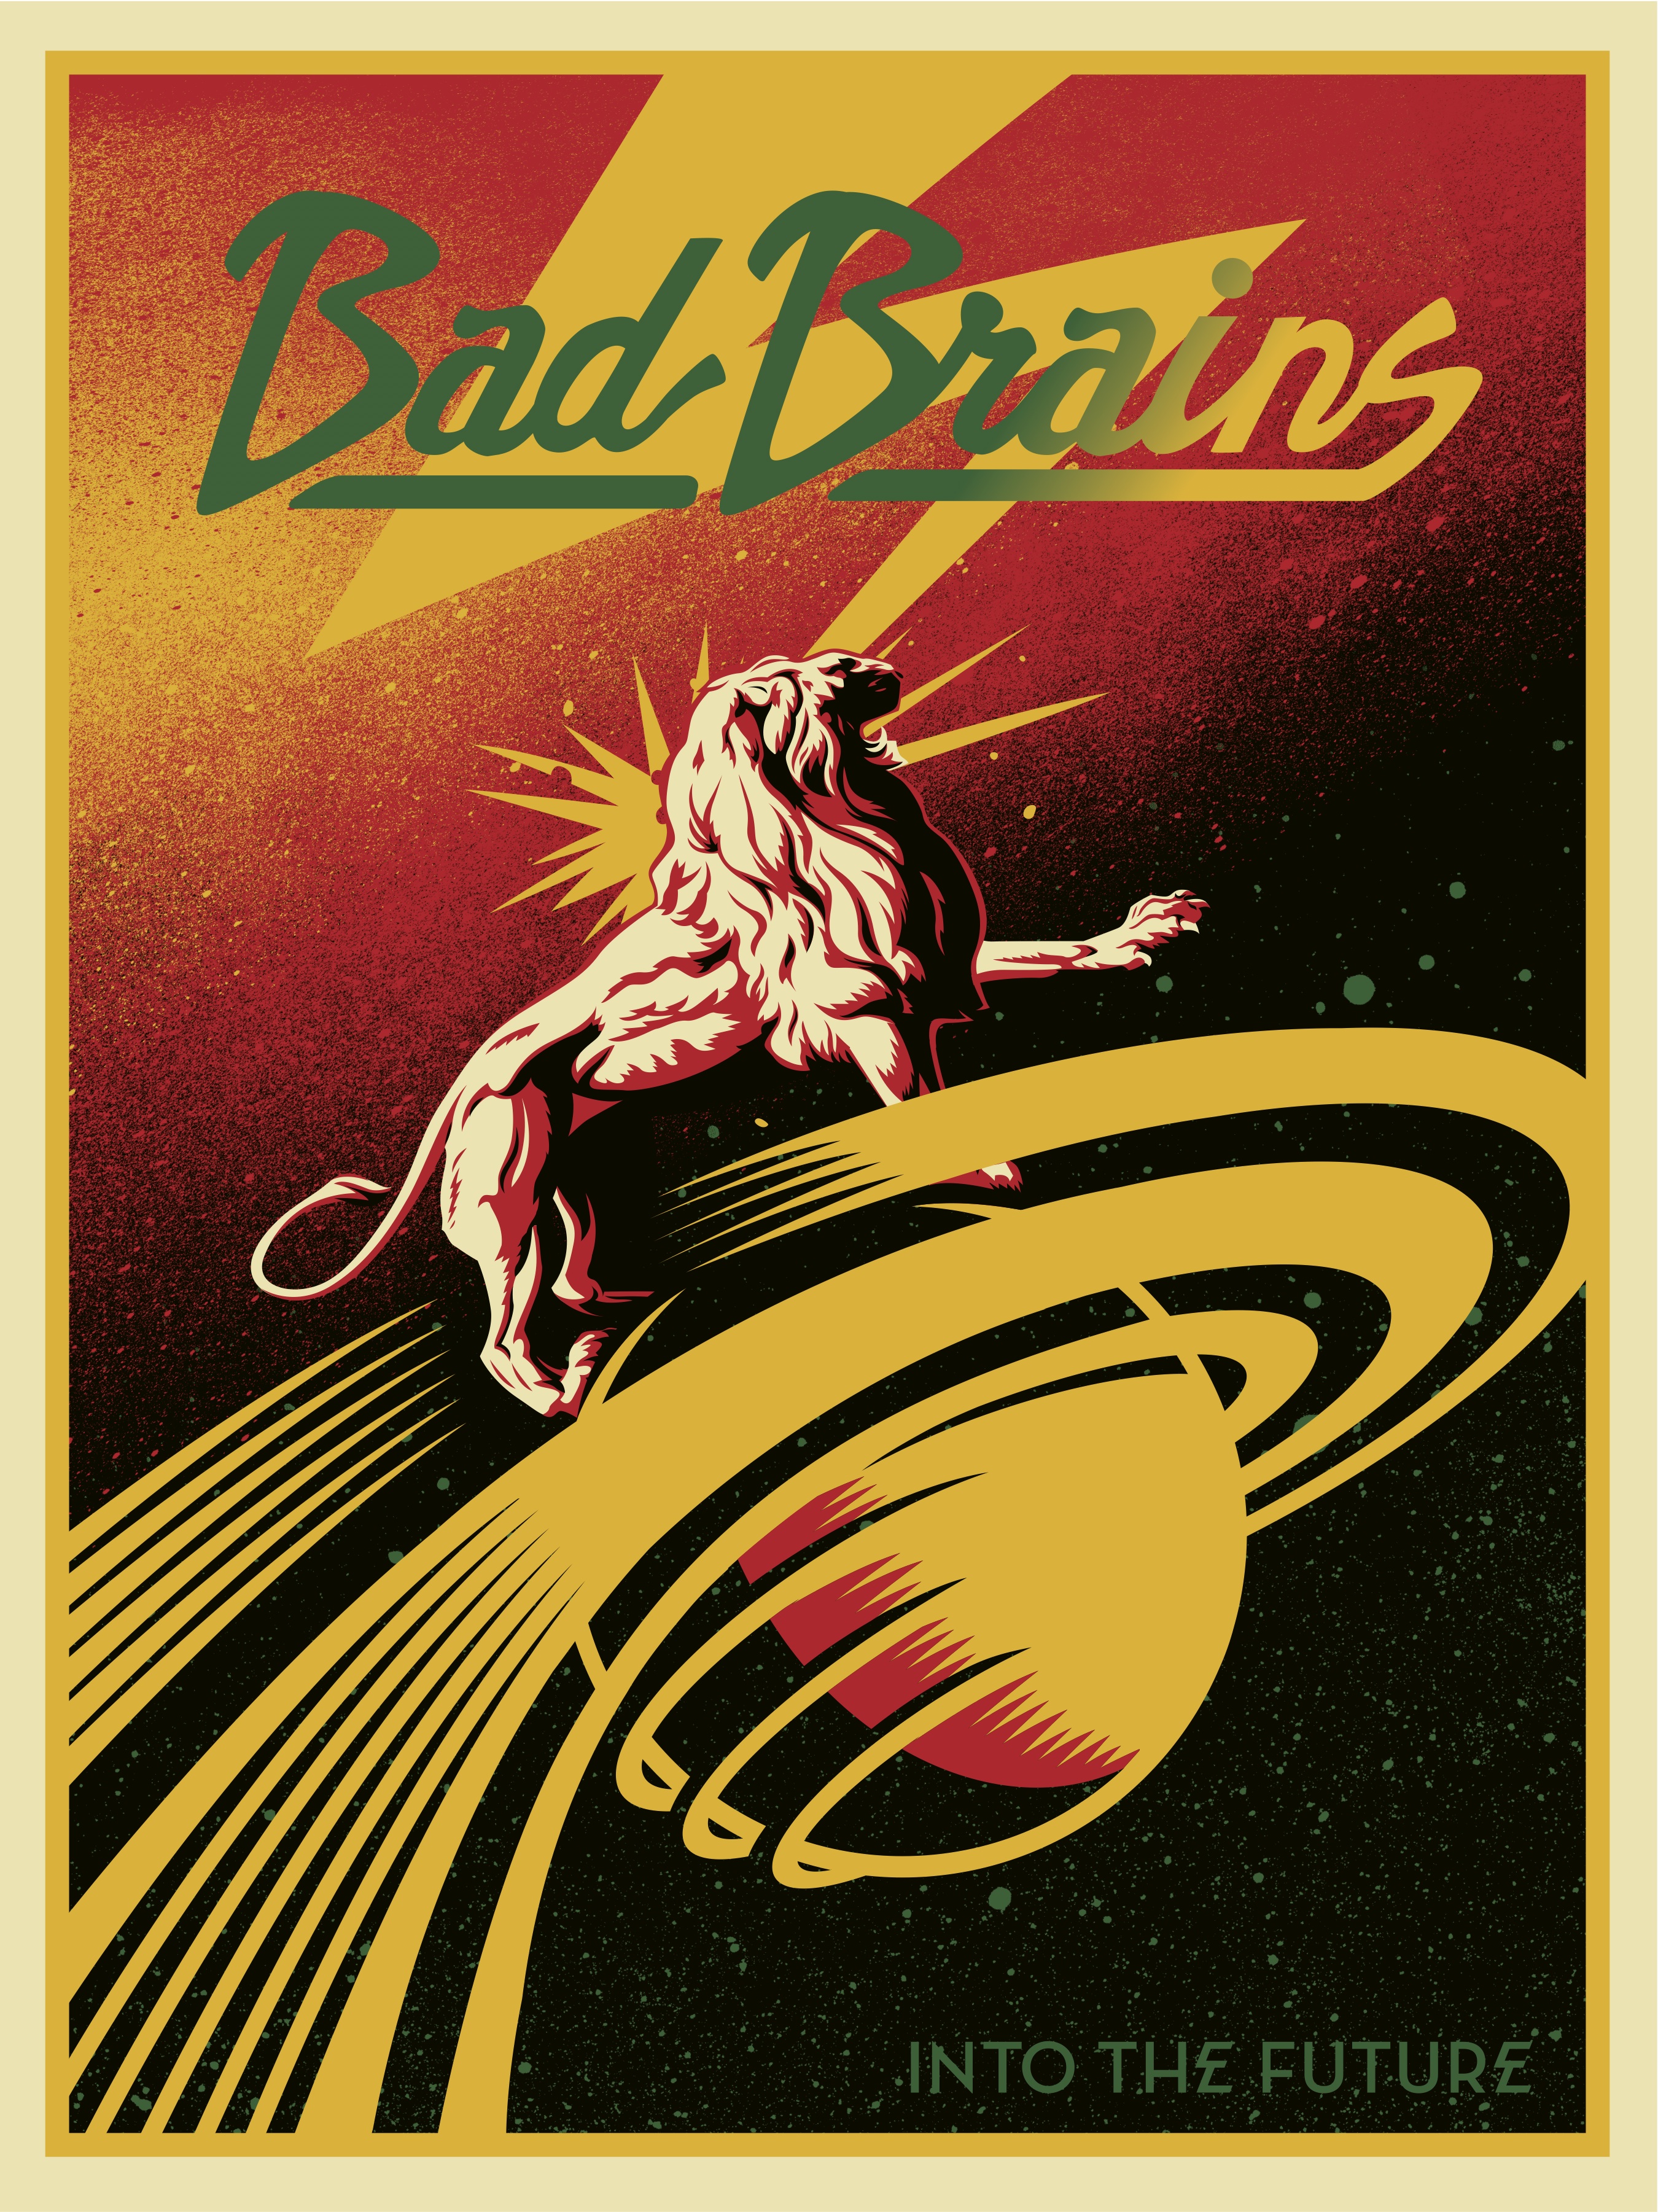 https://obeygiant.com/images/2015/07/BAD-BRAINS-Poster.jpg